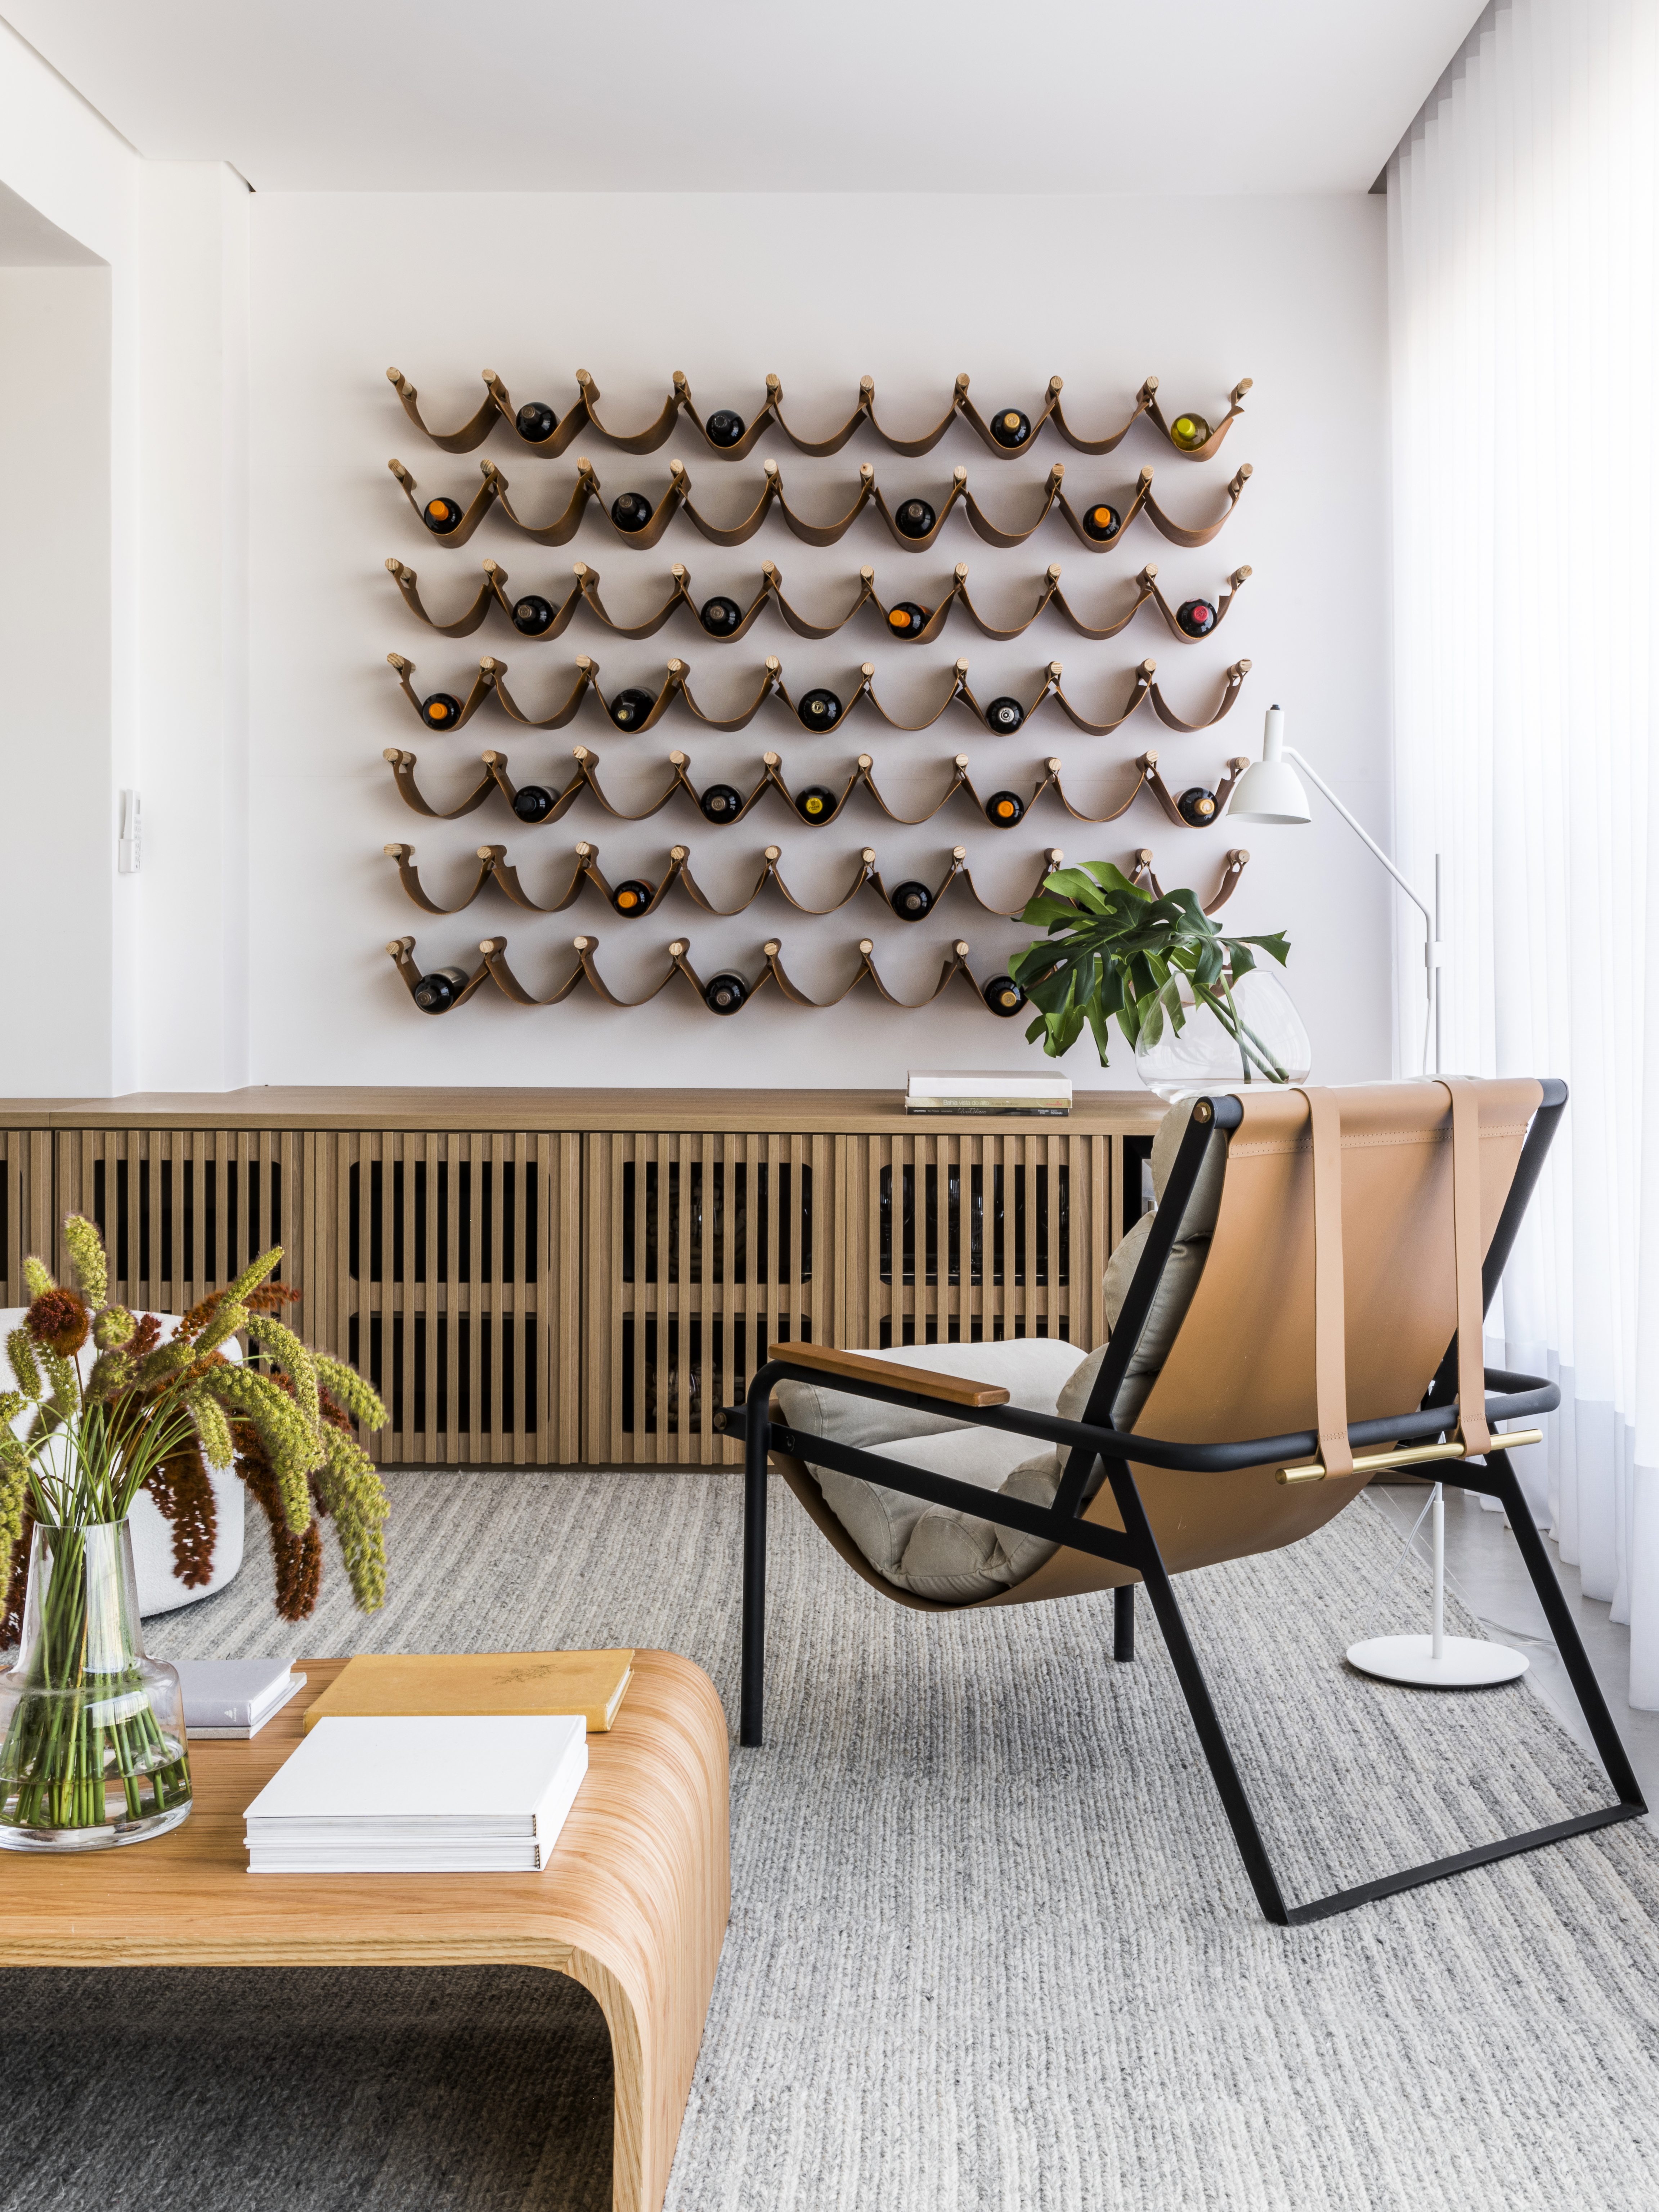 Projeto de Ticiane Lima. Na foto, sala de estar com varanda integrada, buffet de madeira, adega com fitas de couro.